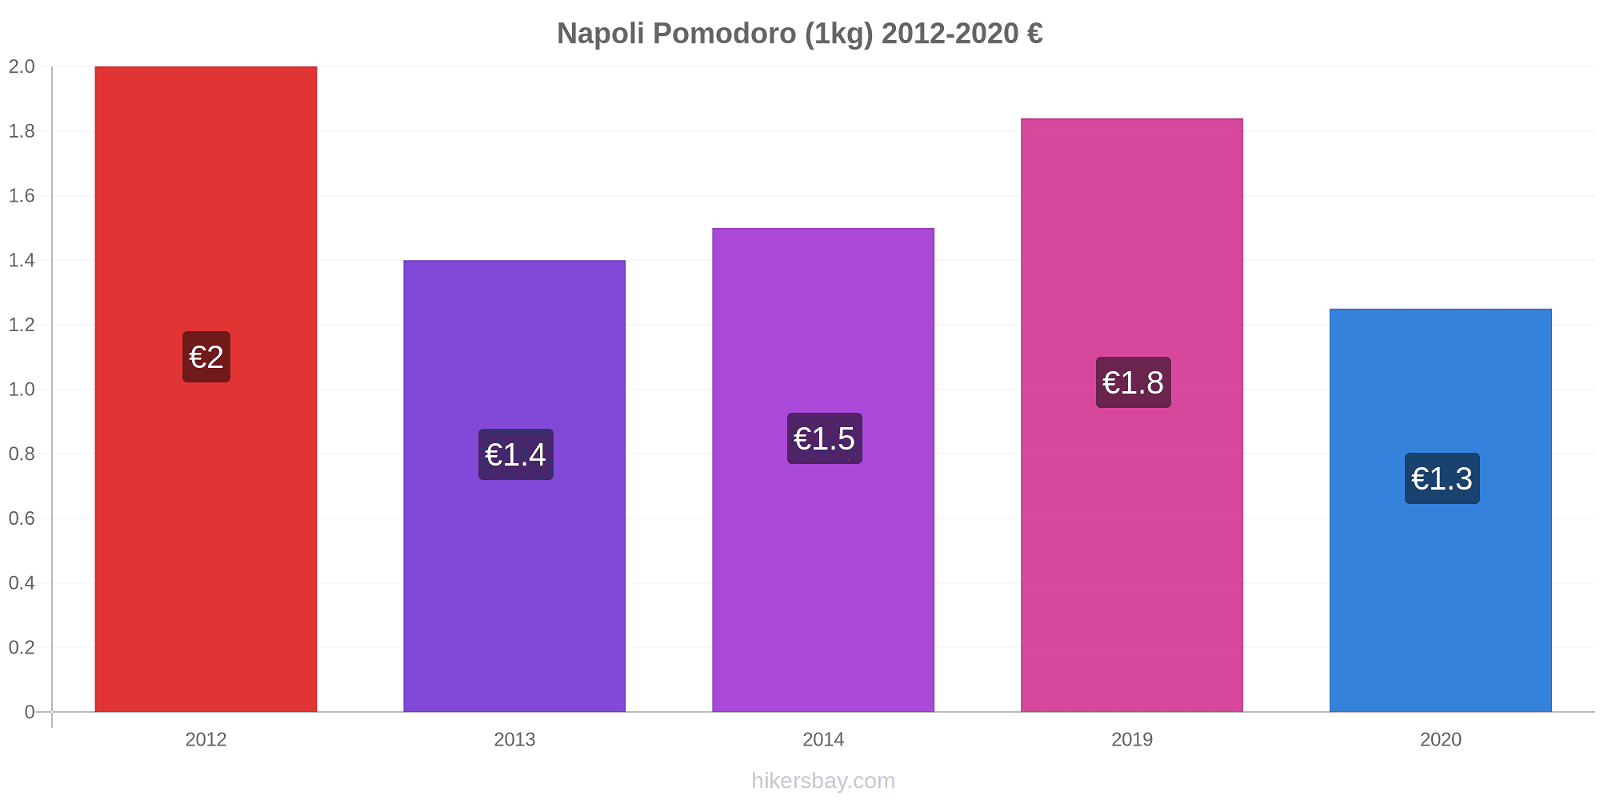 Napoli variazioni di prezzo Pomodoro (1kg) hikersbay.com